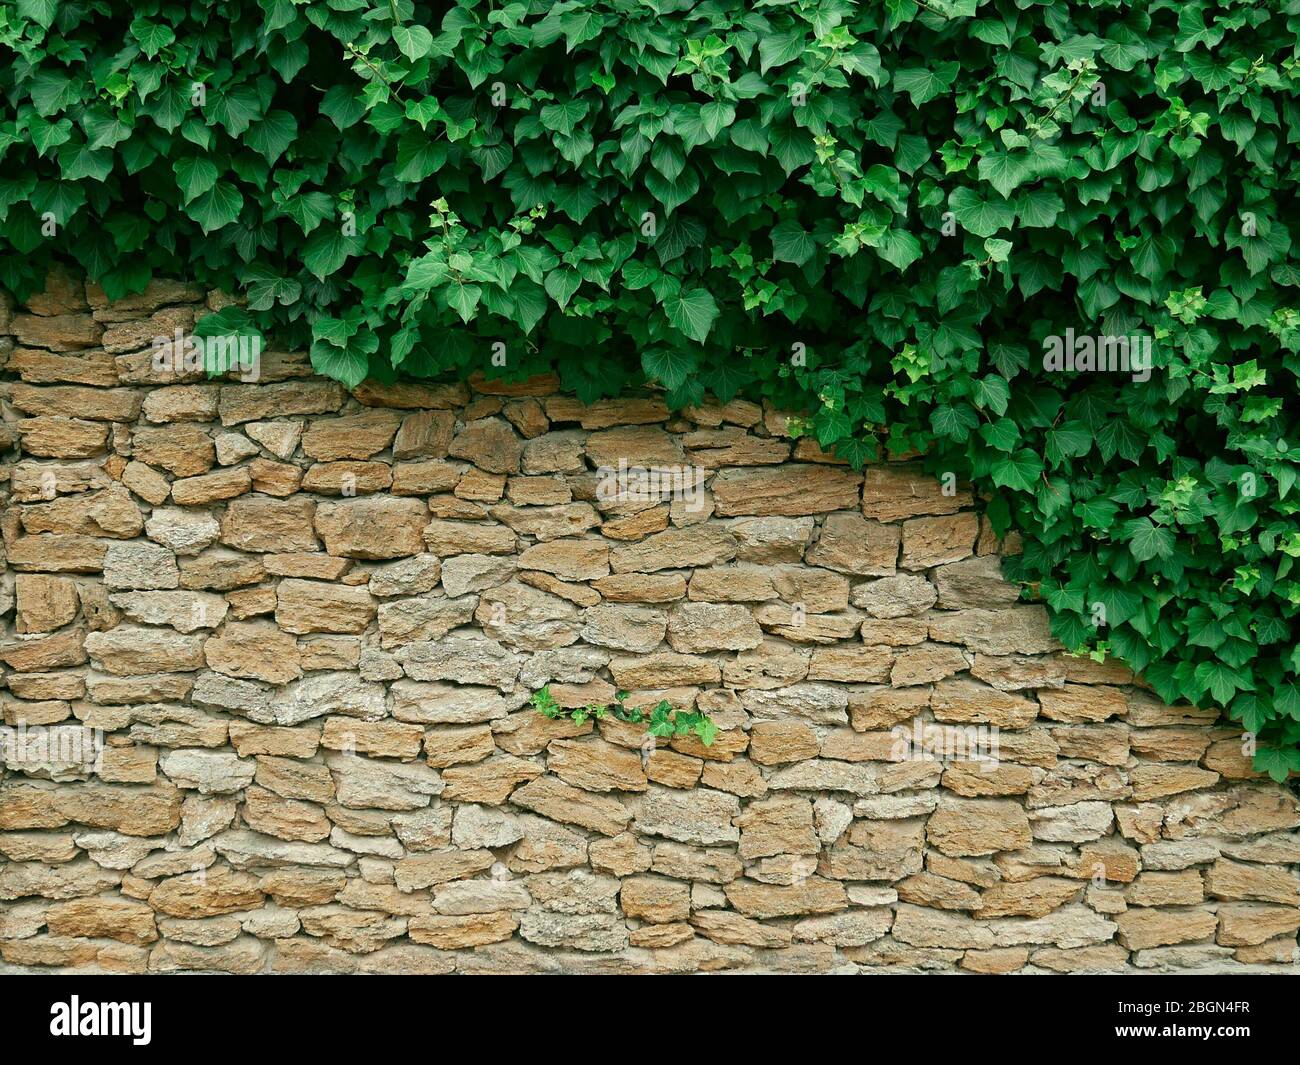 Fitte piante di liana addensate appese su alte pareti desiderano pietre calcaree senza forma Foto Stock